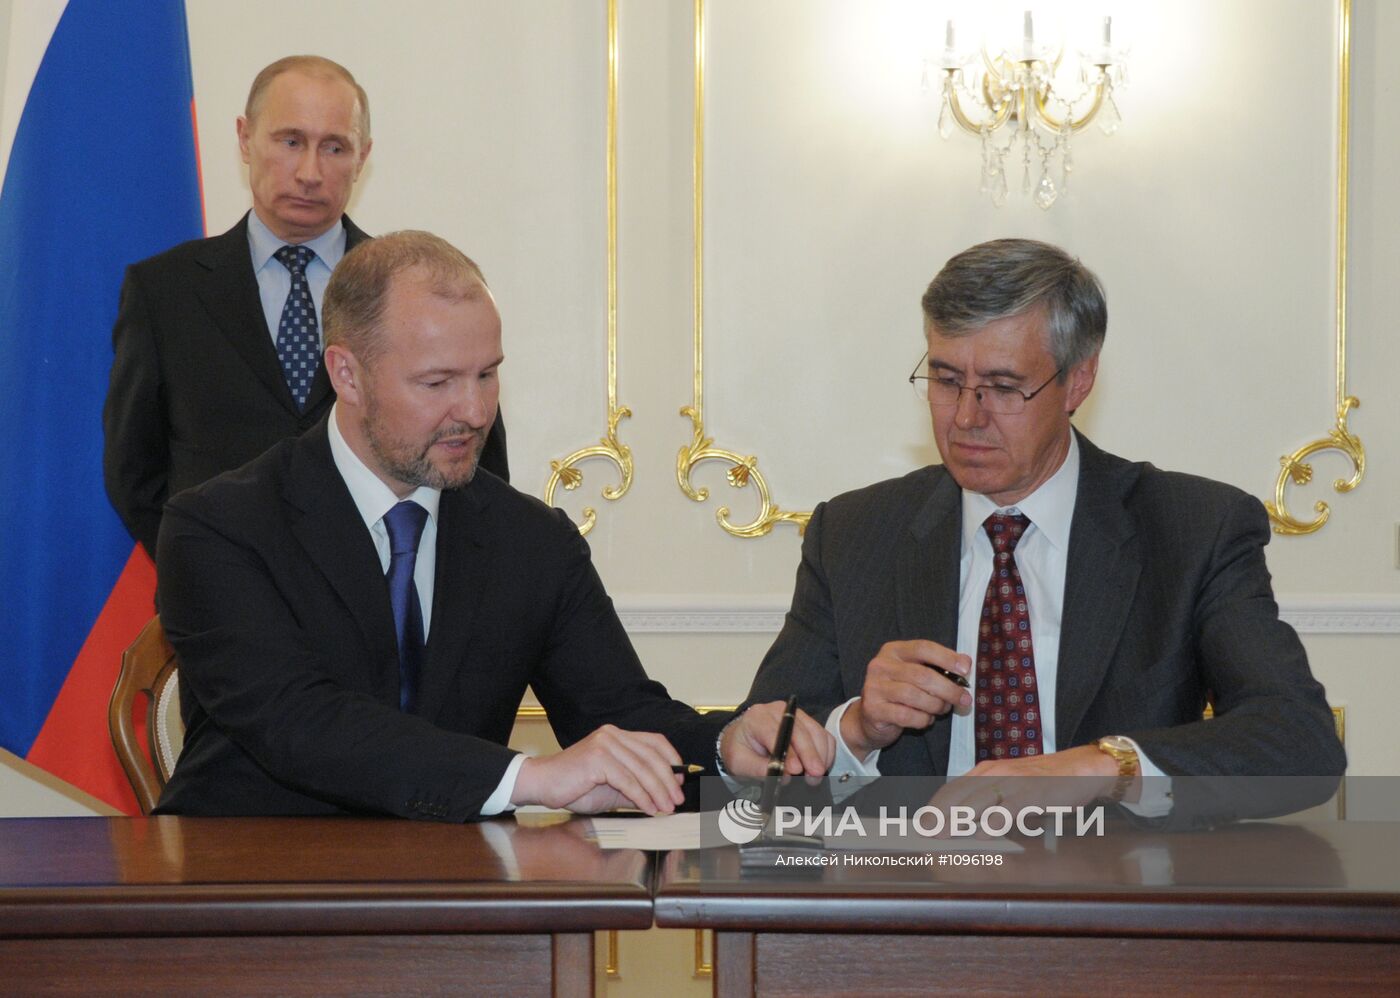 В.Путин встретился с главой ExxonMobil Р.Тиллерсоном